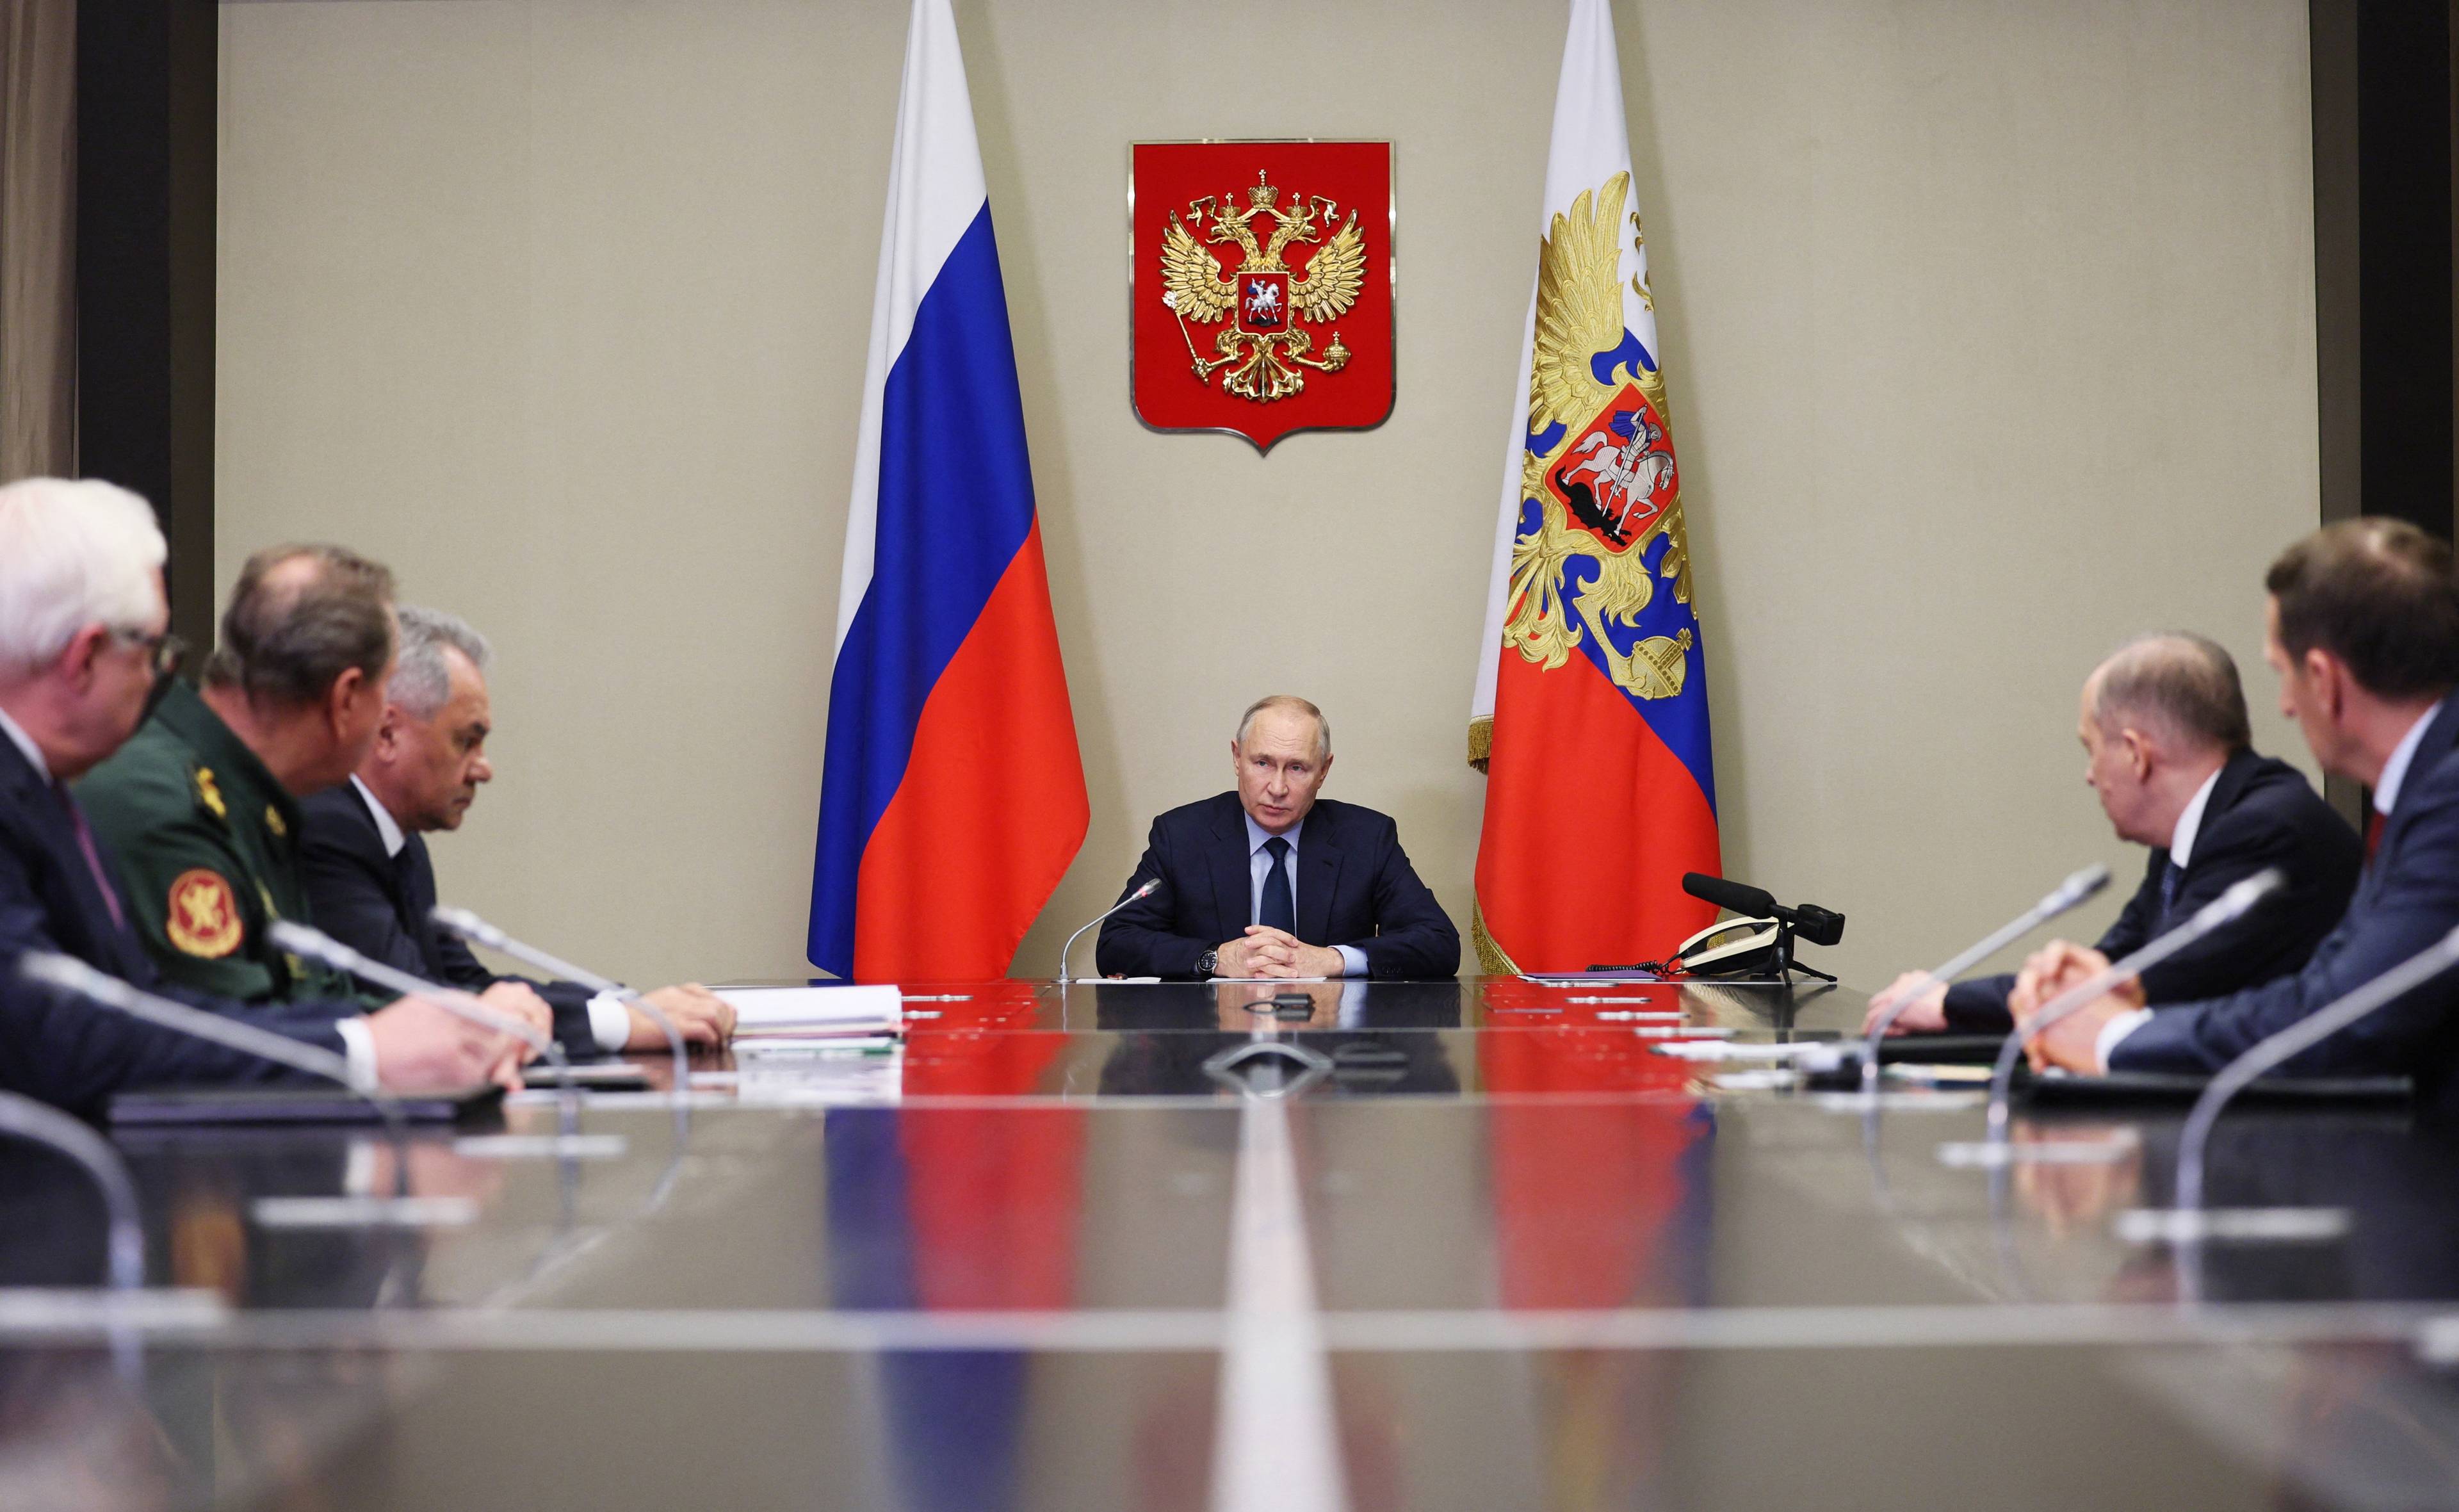 Grupa mężczyzn siedzi przy stole. U szczytu, pod godłem Rosji - Władimir Putin